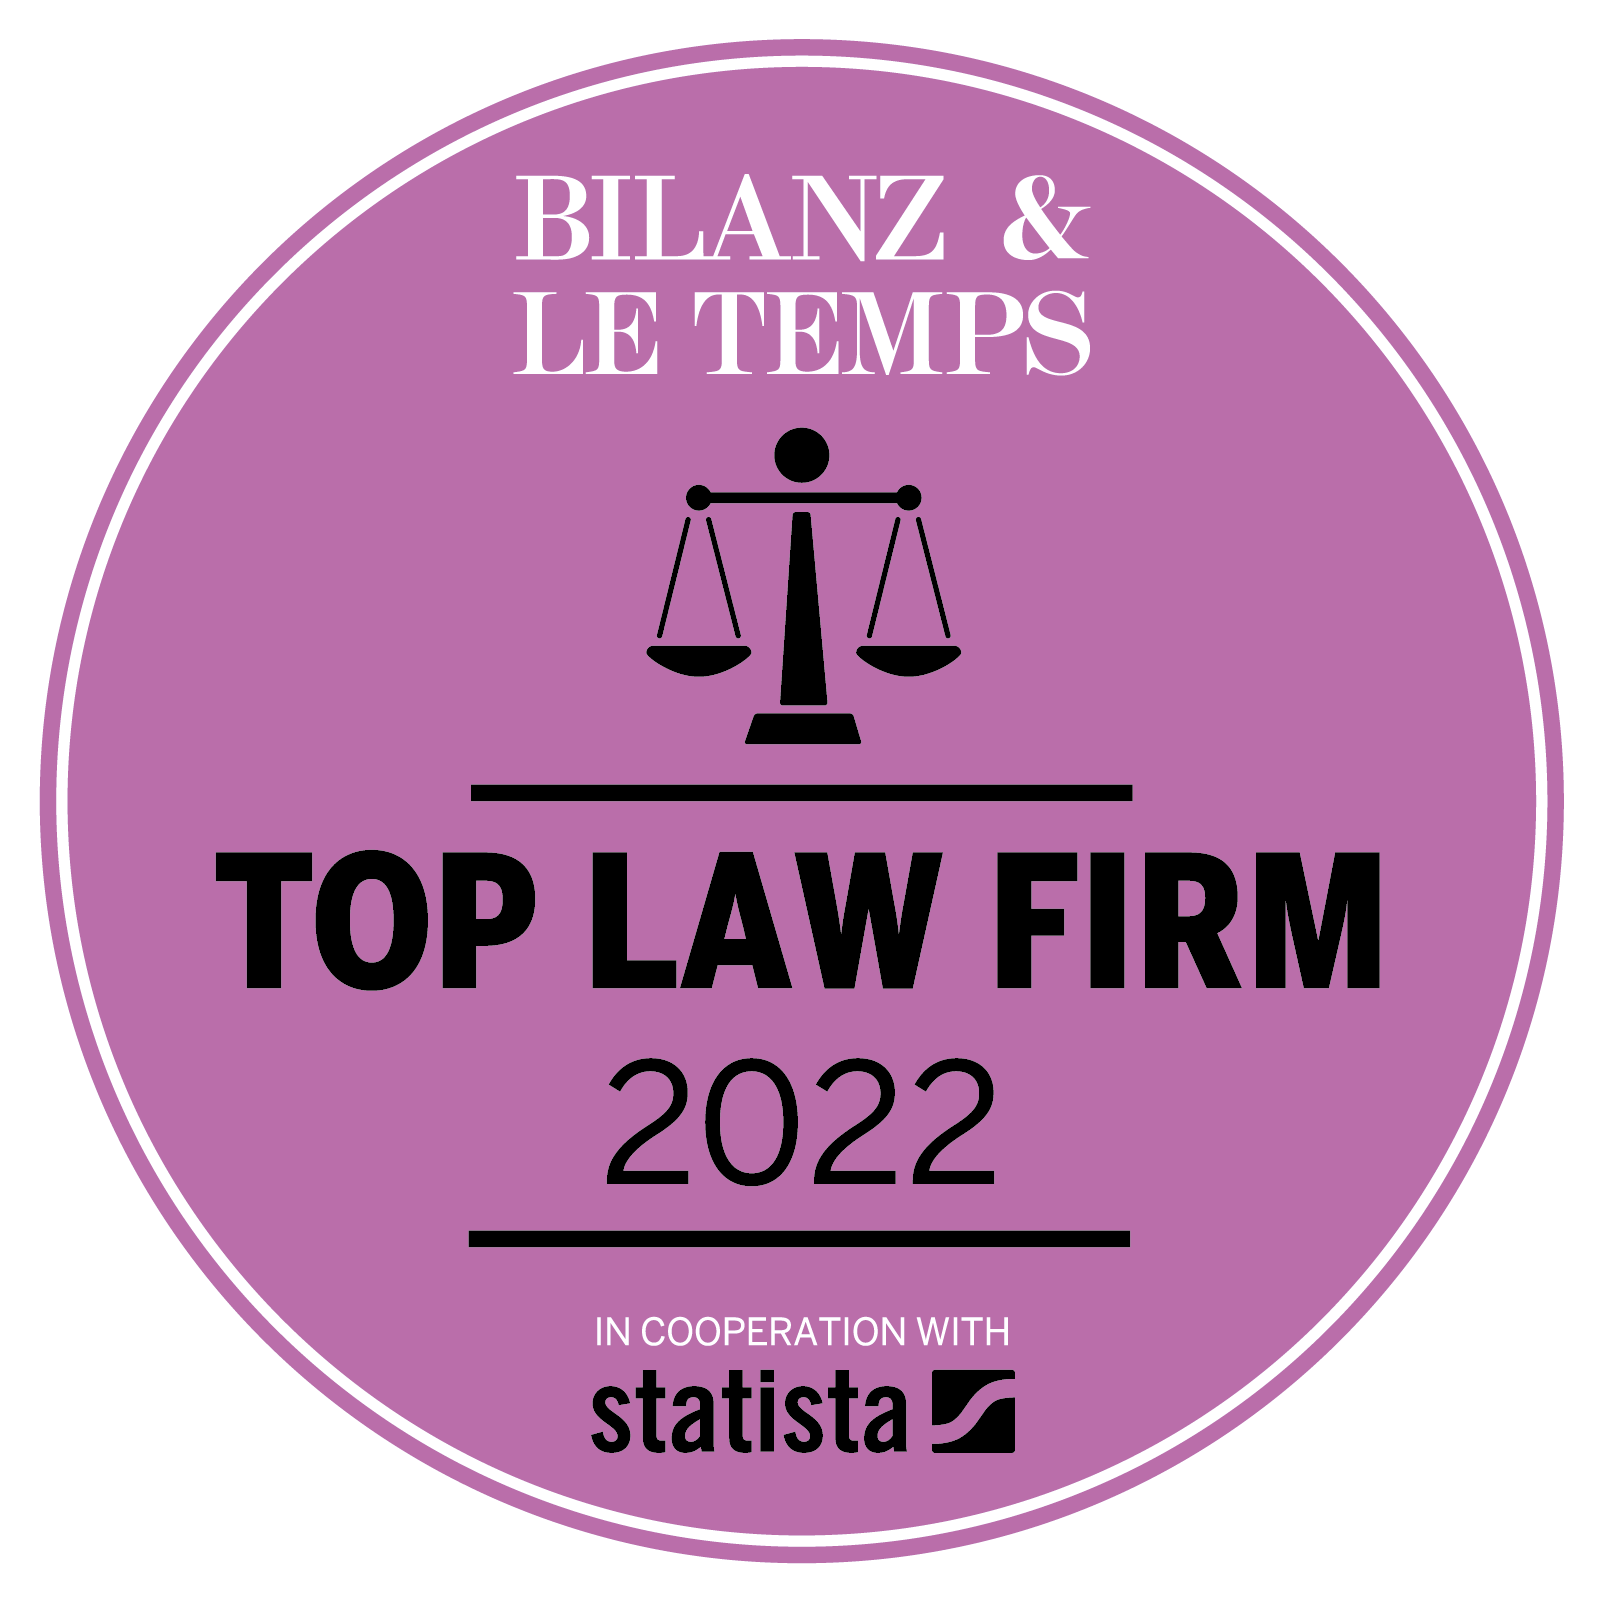 Le_TempsBZ_TAKCH2022_Logo_EN